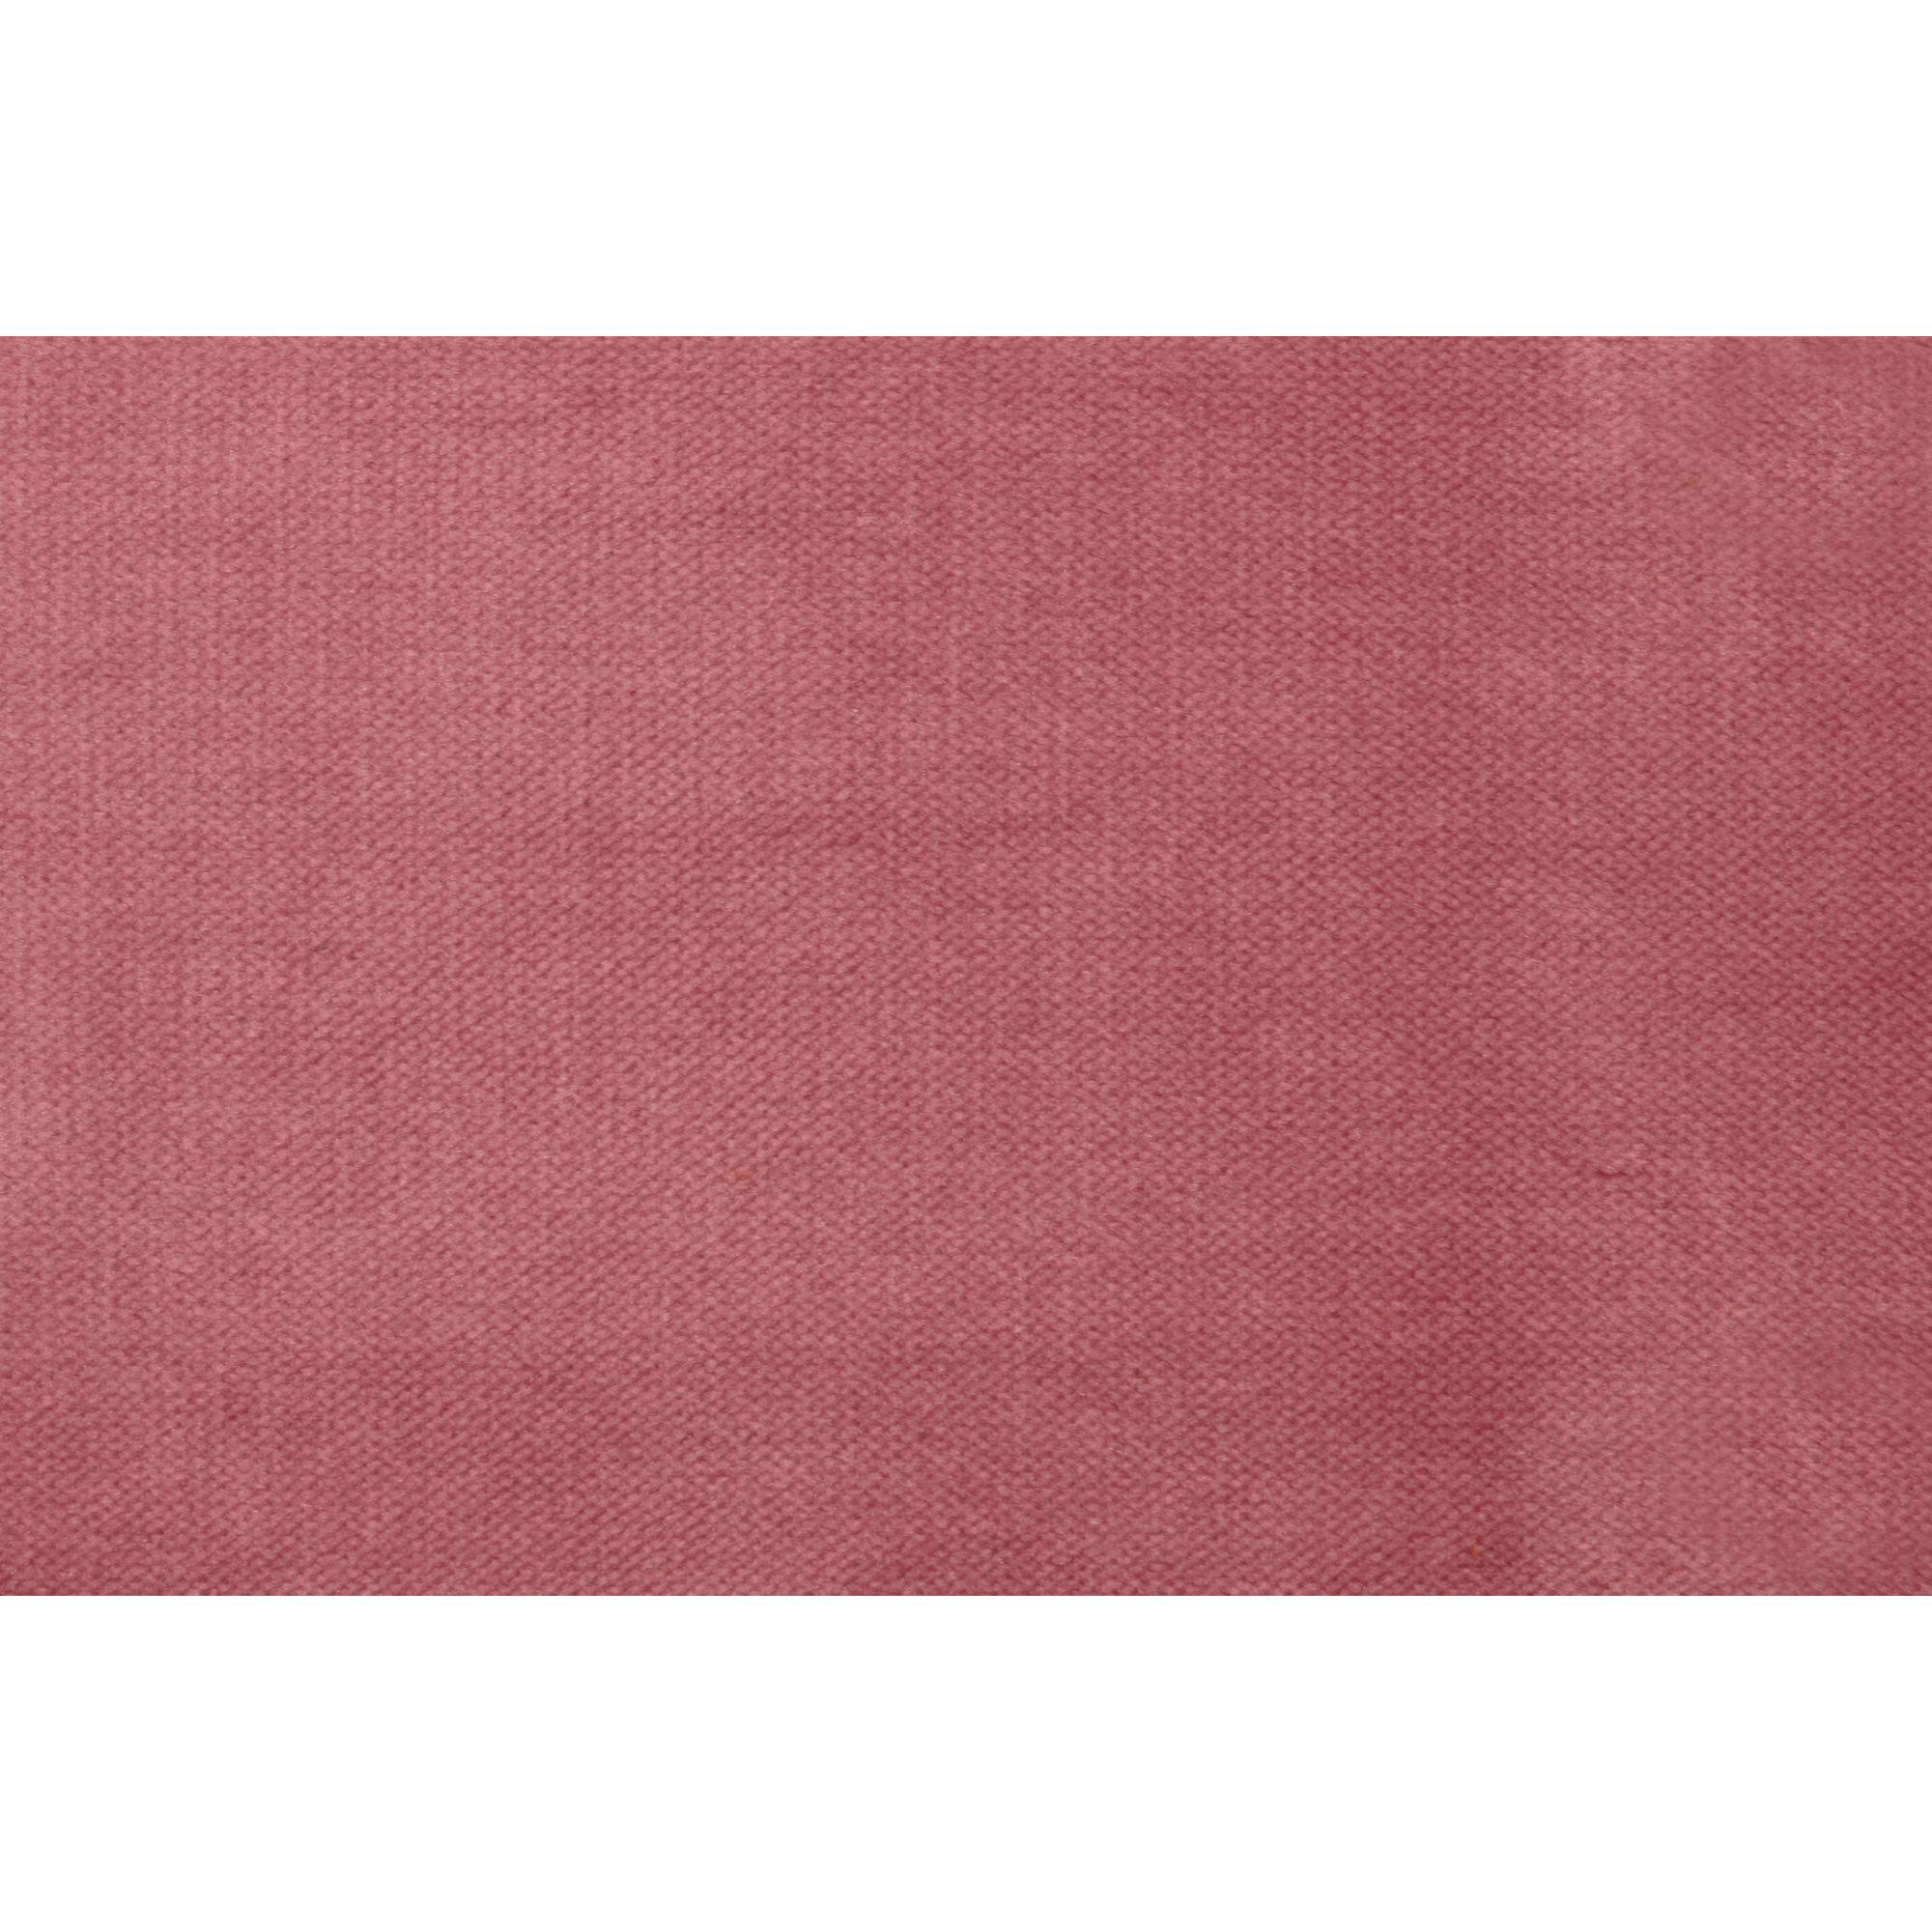  Rodeo Chaiselong Højrevendt Velour - Pink fra BePureHome i Velour (Varenr: 800902-73)